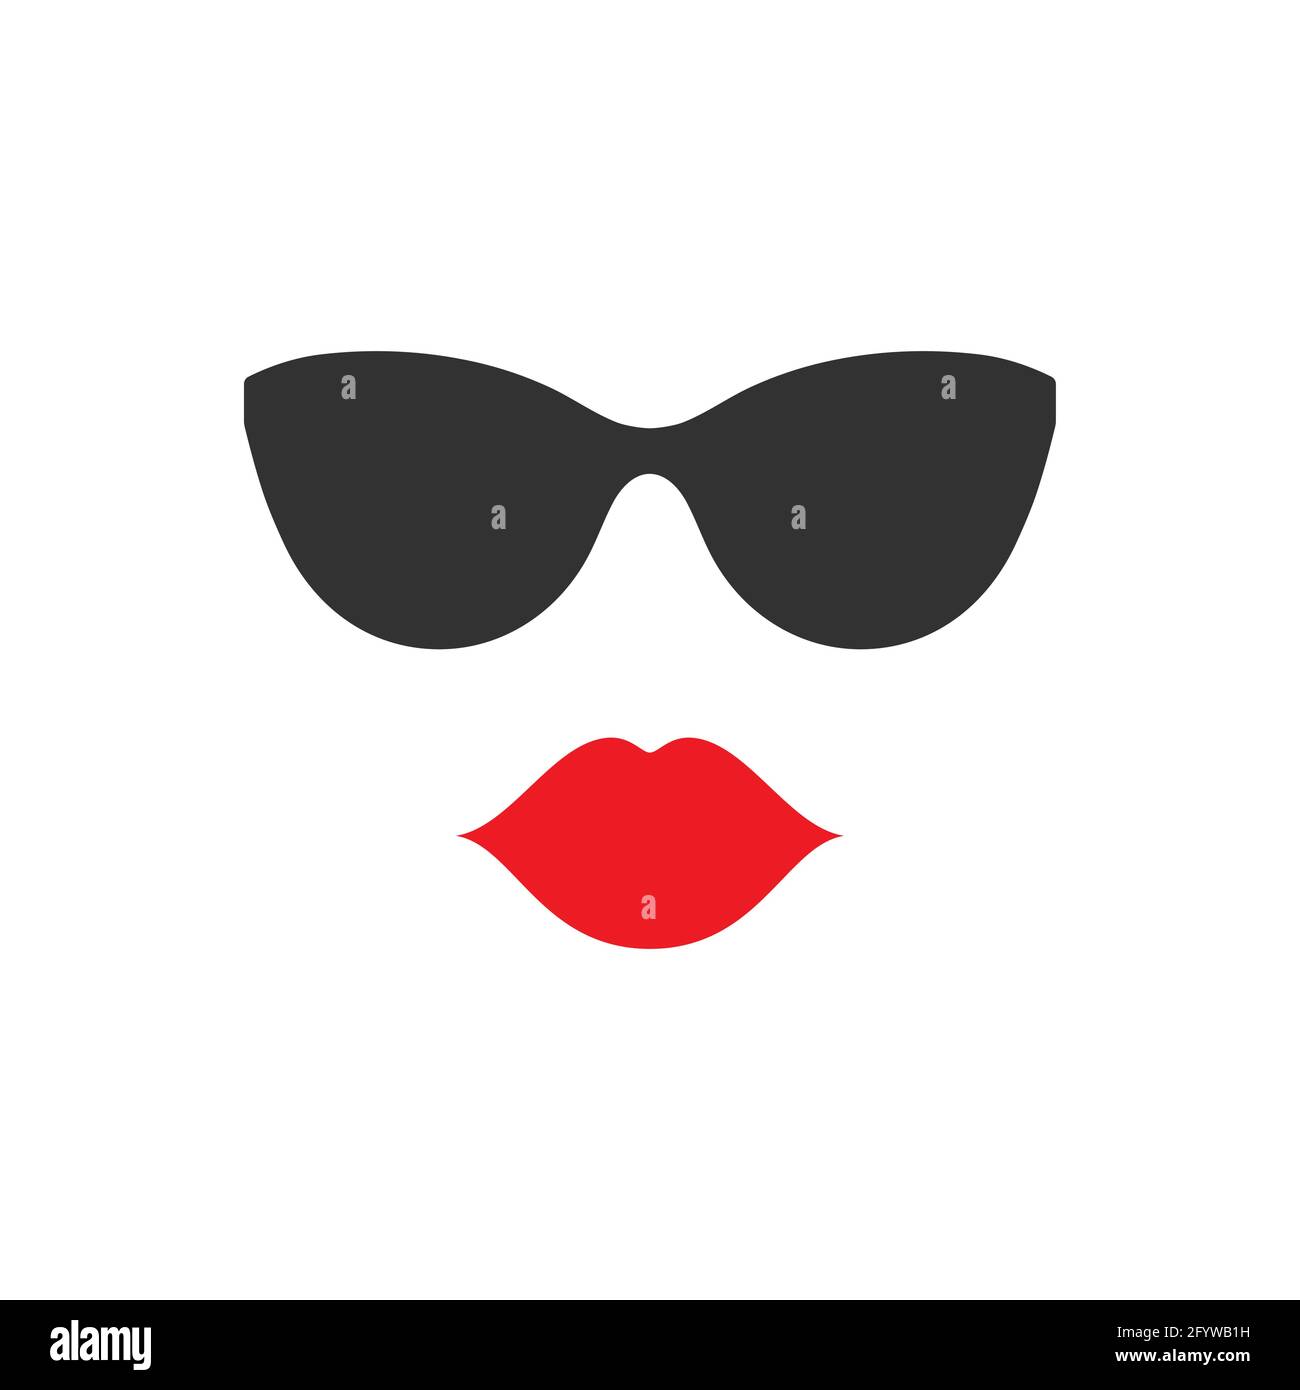 mujer con gafas de sol redondas rojas 10482554 Foto de stock en Vecteezy